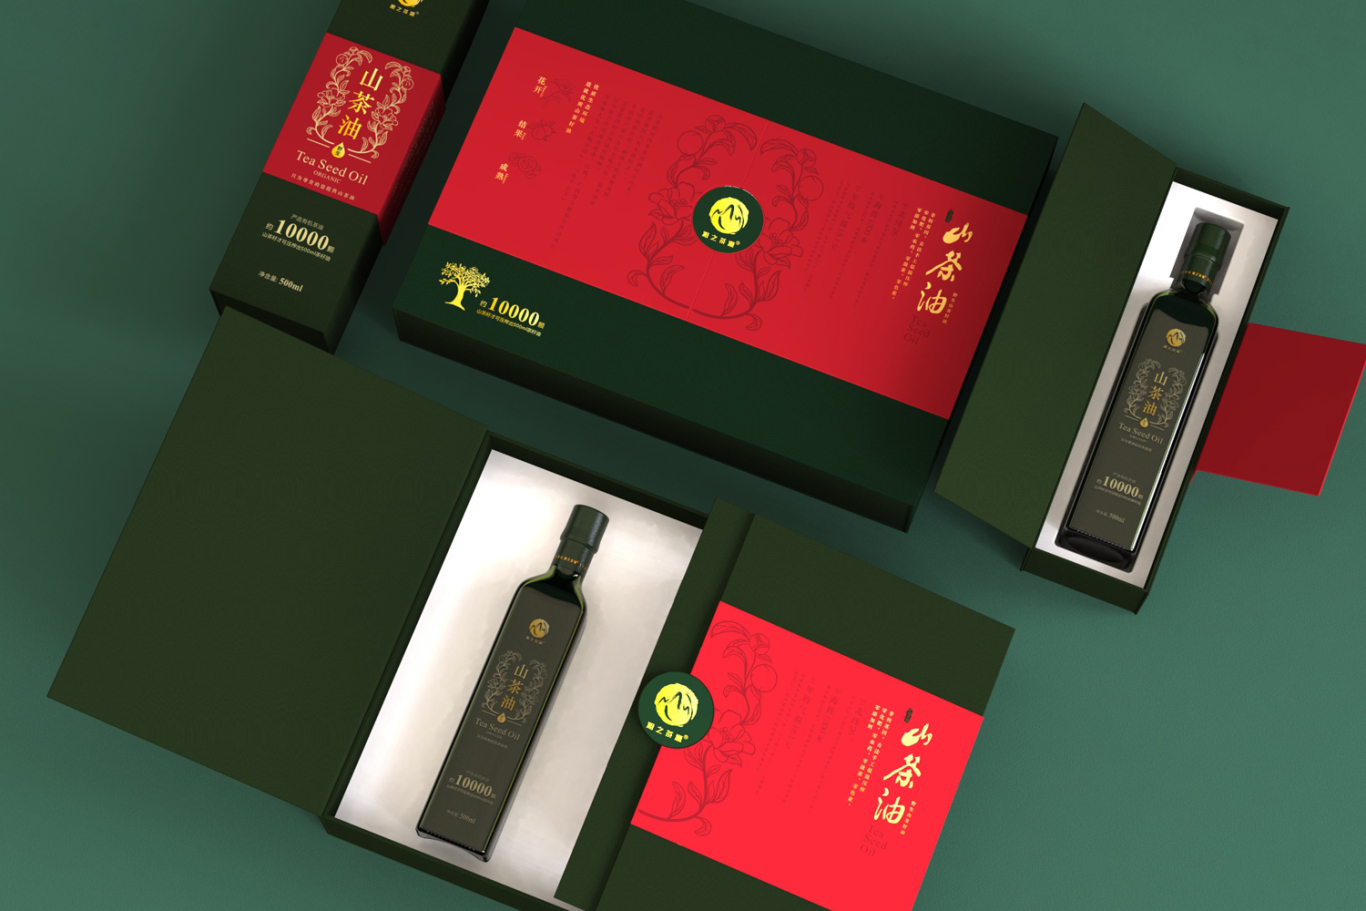 湘之茶源 山茶油礼盒装包装设计案例分享图2